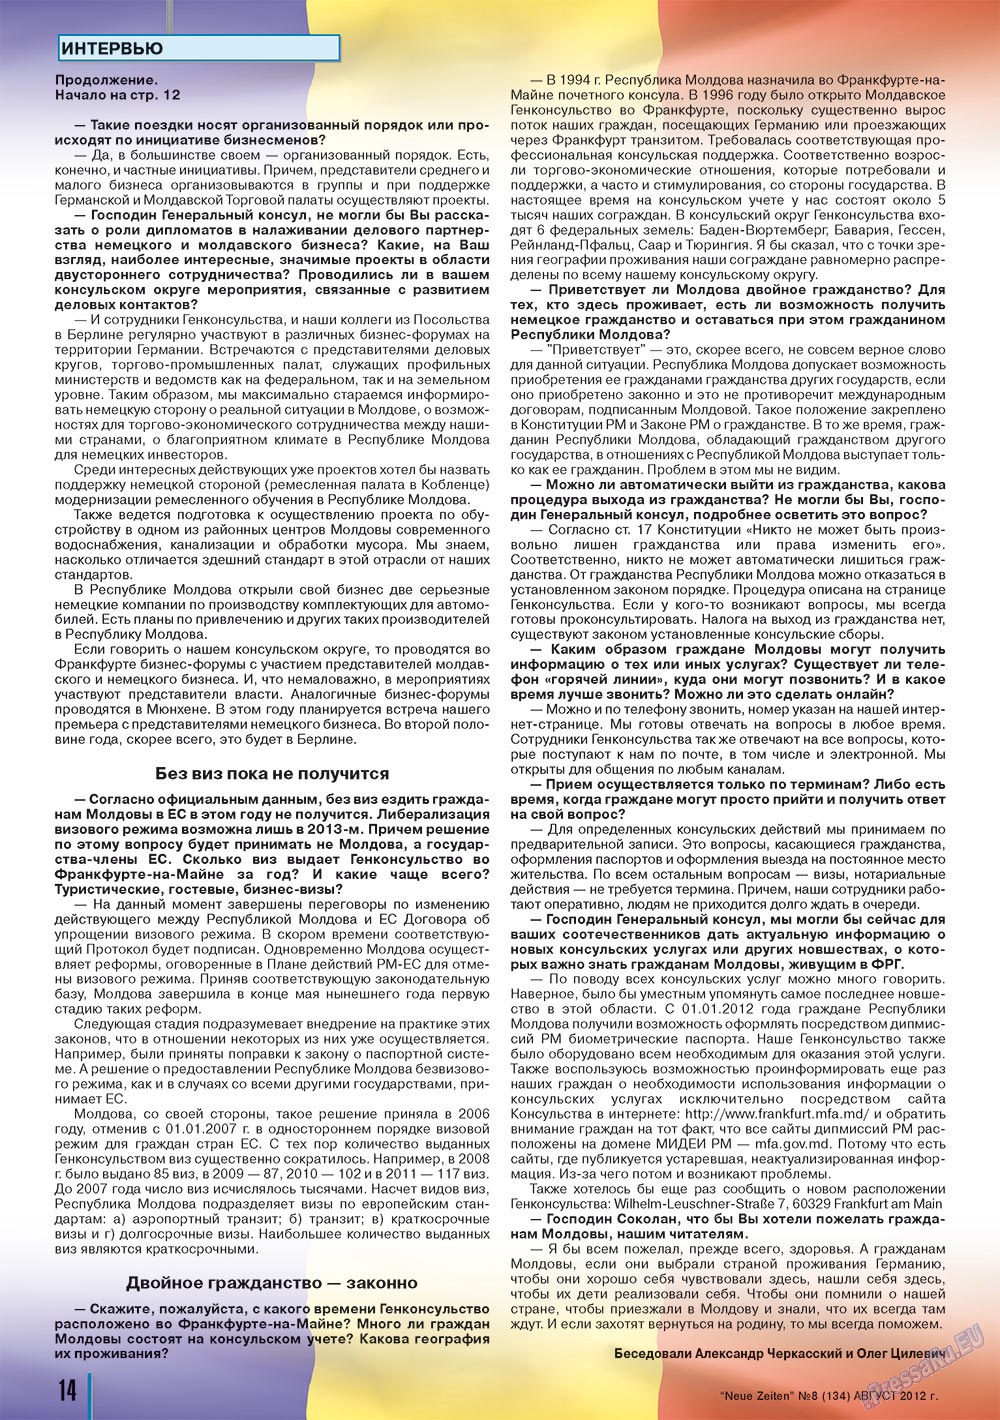 Neue Zeiten, журнал. 2012 №8 стр.14